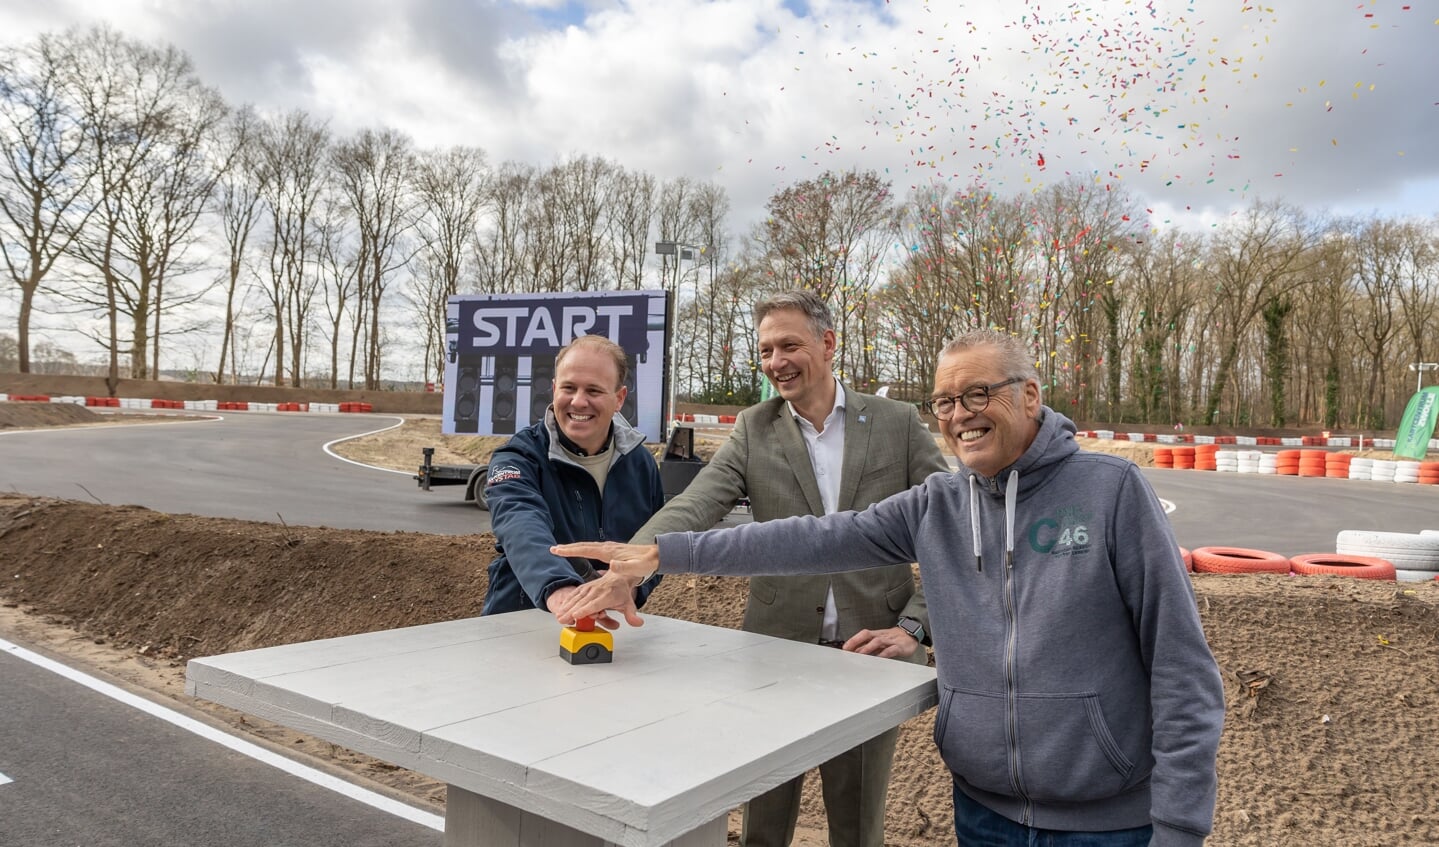 Opening vernieuwd Kartcentrum Zwolle door wethouder Michiel van Willigen en presentator Olav Mol. Links de trotse eigenaar Christiaan Snoek.